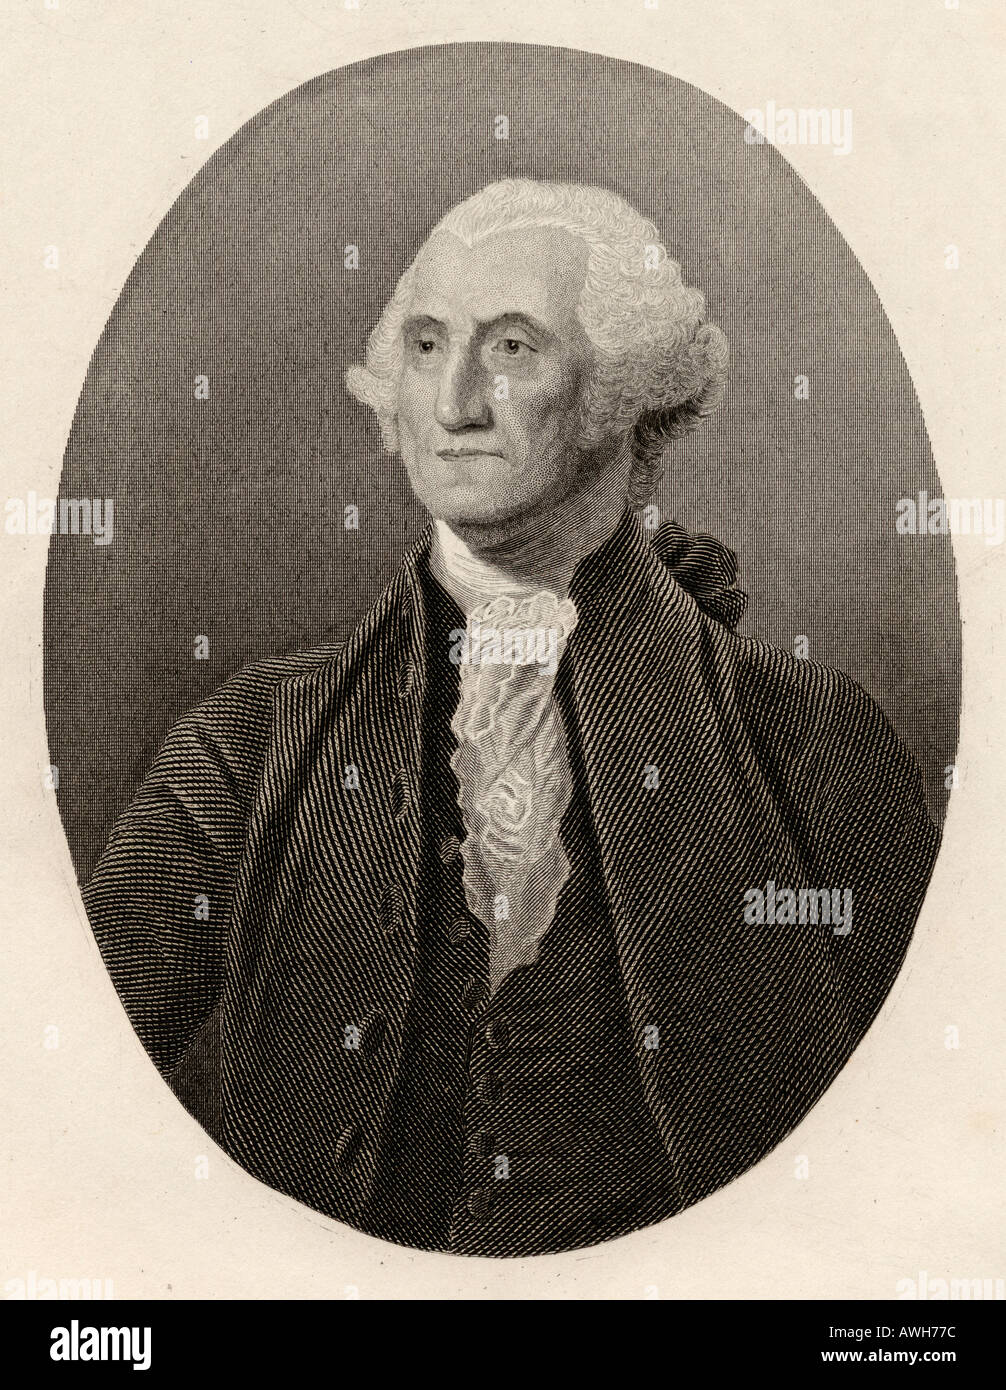 George Washington, 1732 - 1799. Dirigente político norteamericano, general militar, estadista y padre de la patria. Primer Presidente de los Estados Unidos. Foto de stock